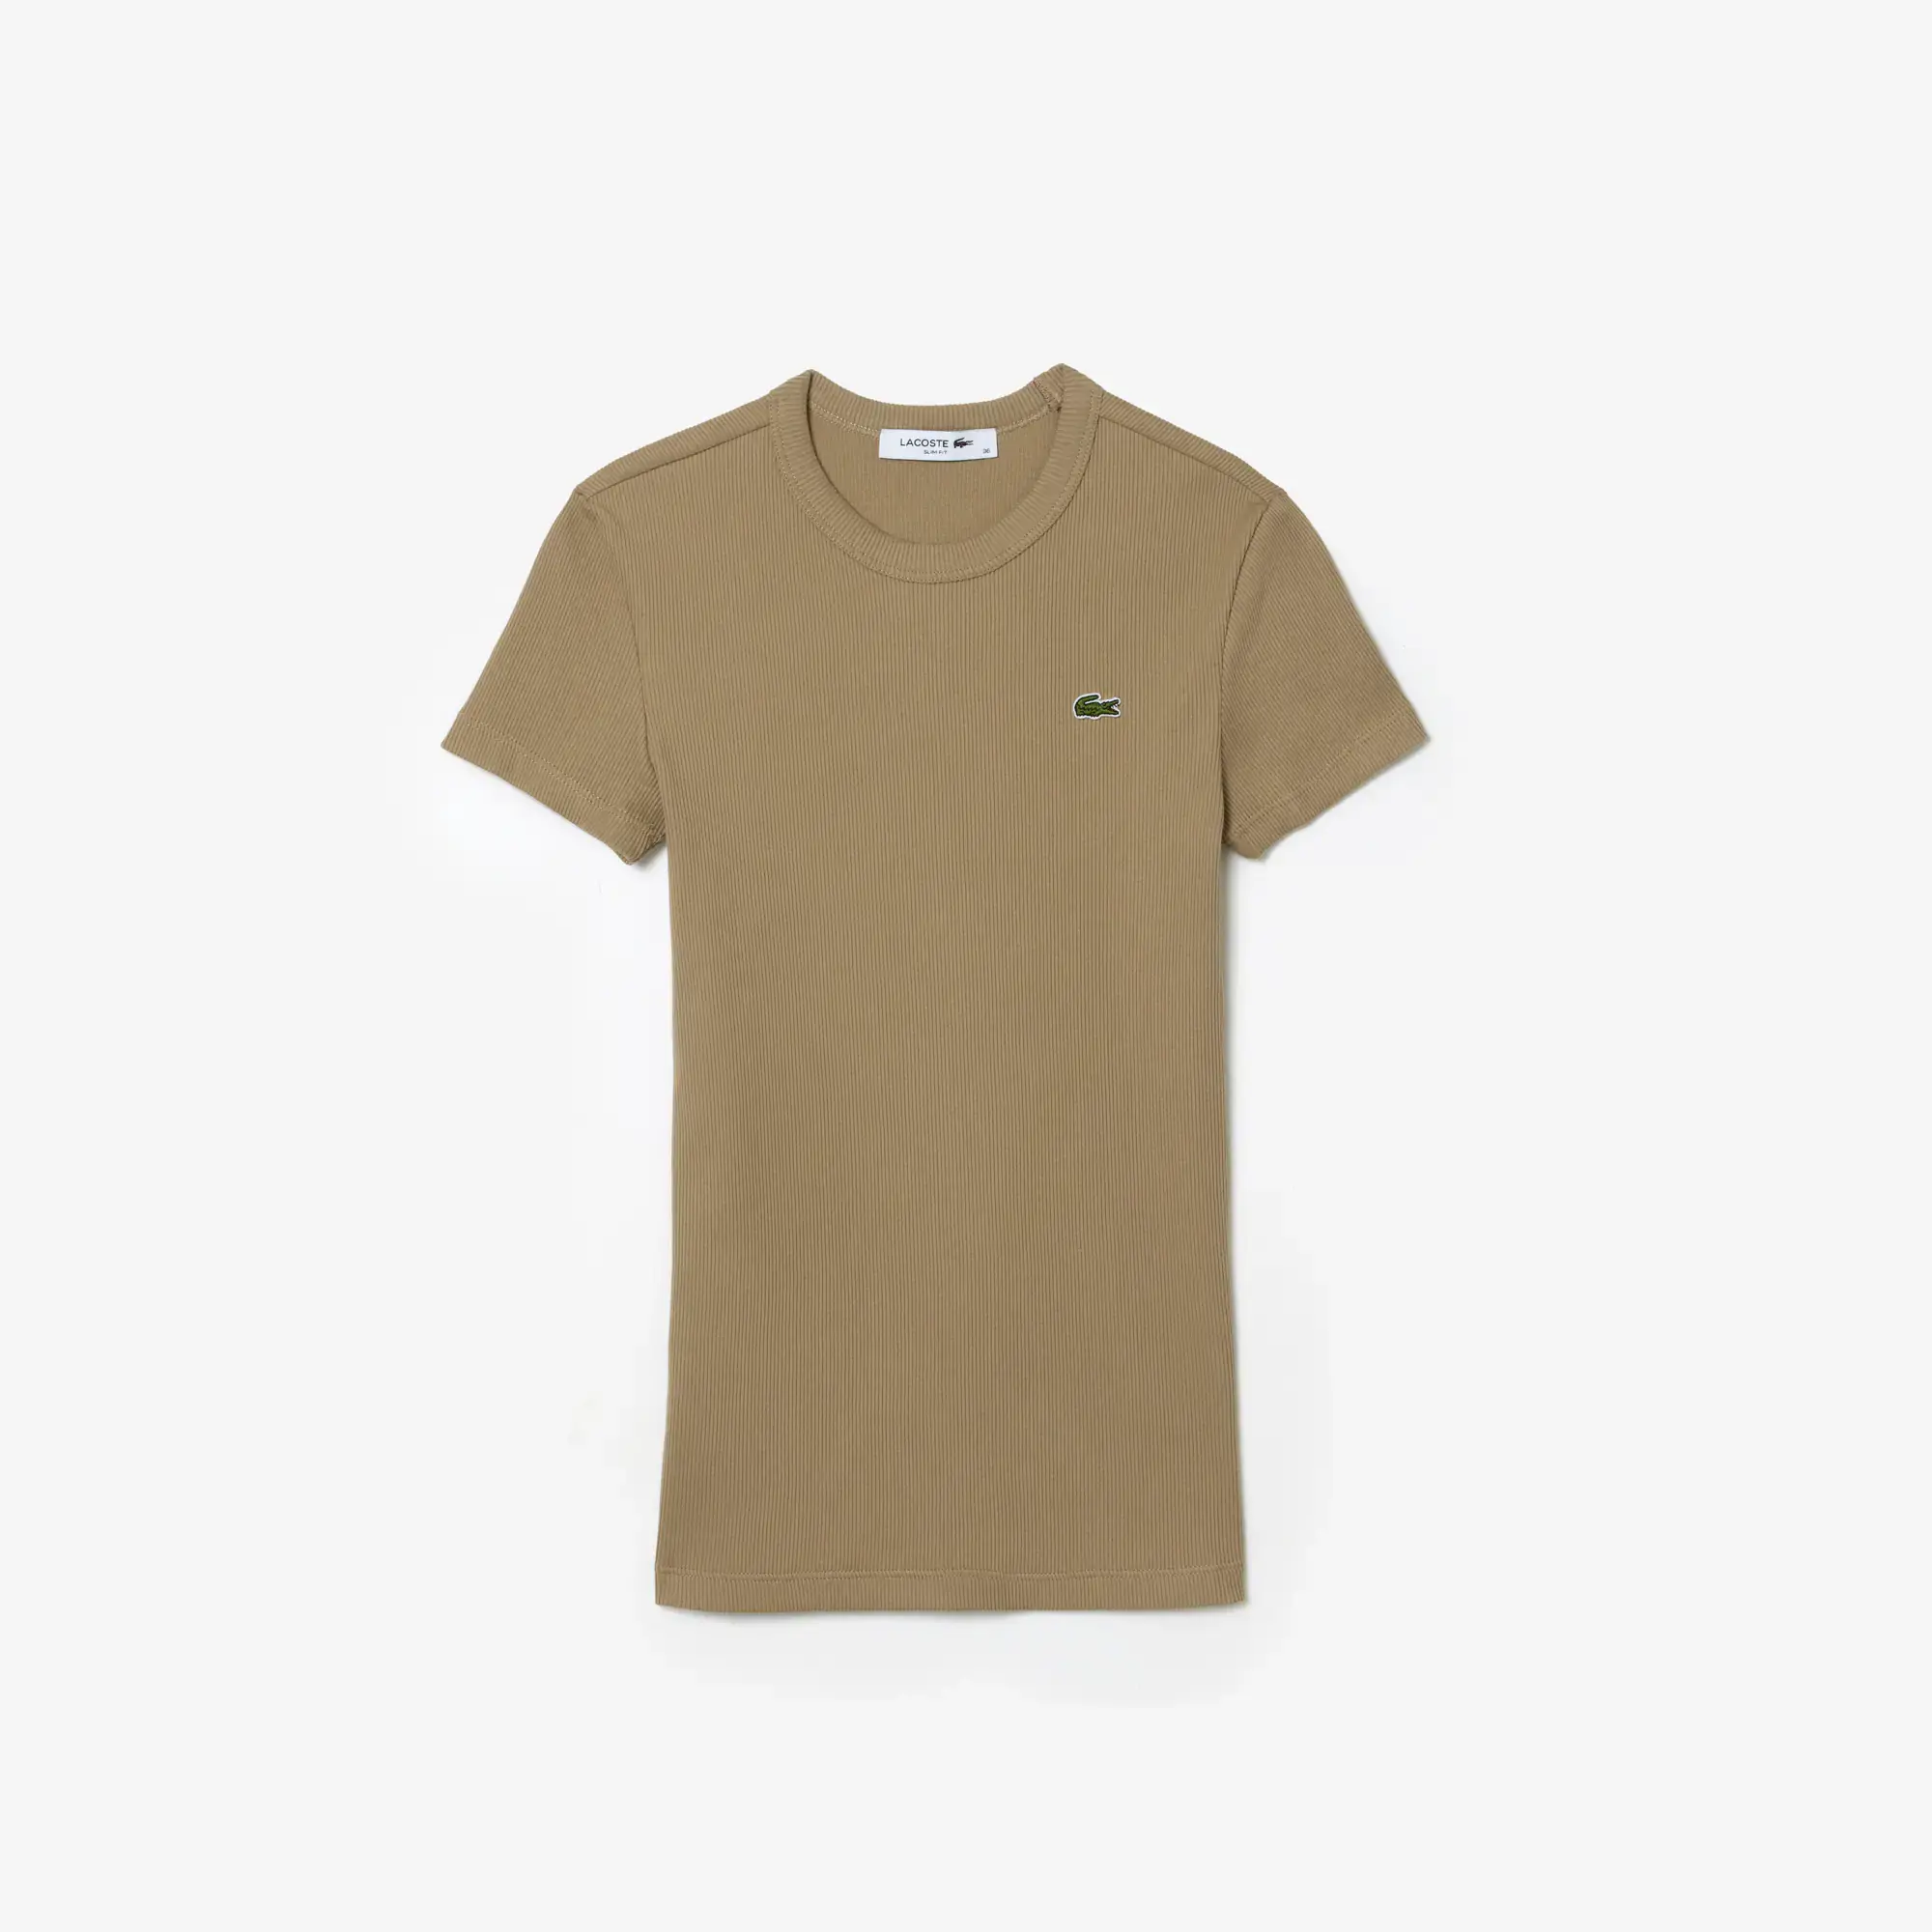 Lacoste Women’s Slim Fit Organic Cotton T-Shirt. 2